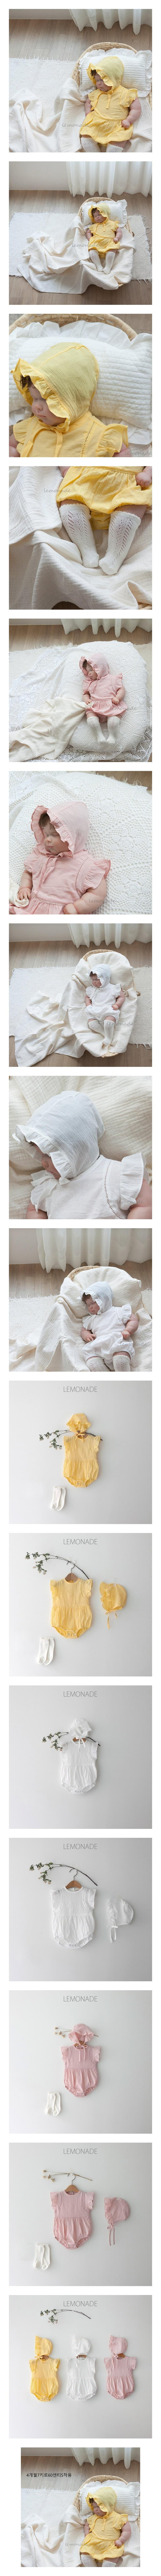 Lemonade - Korean Baby Fashion - #onlinebabyboutique - Ice Bodysuit